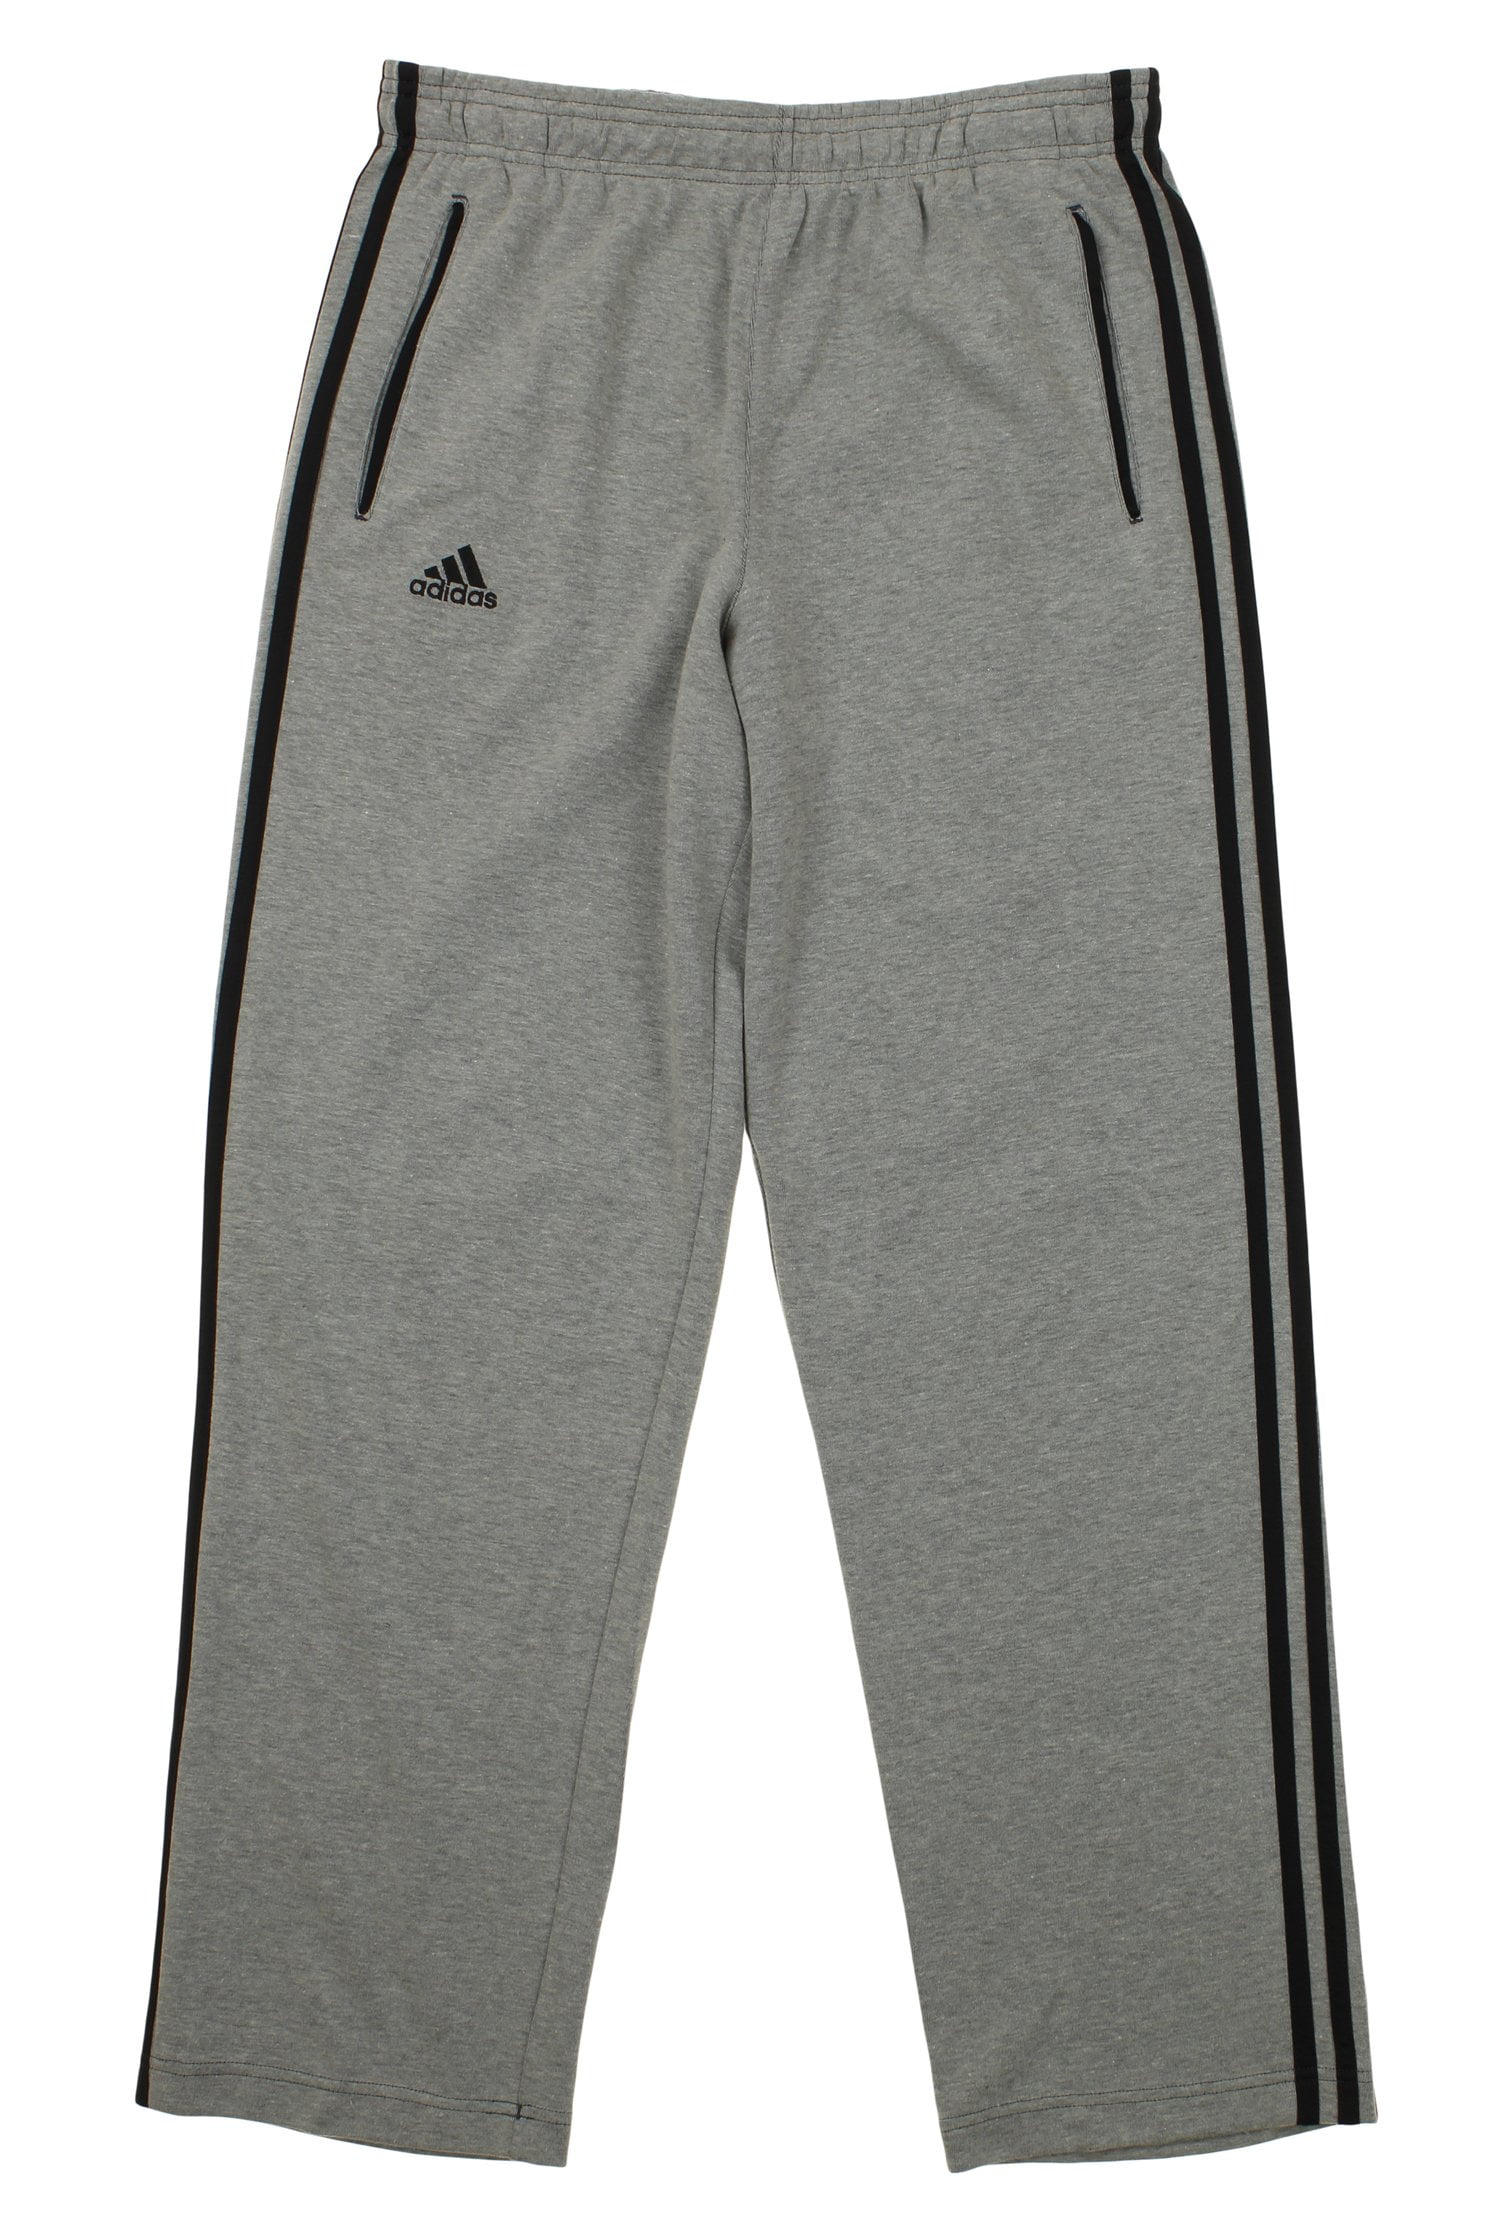 Adidas Men's Classic Track Pant, Grey - Walmart.com